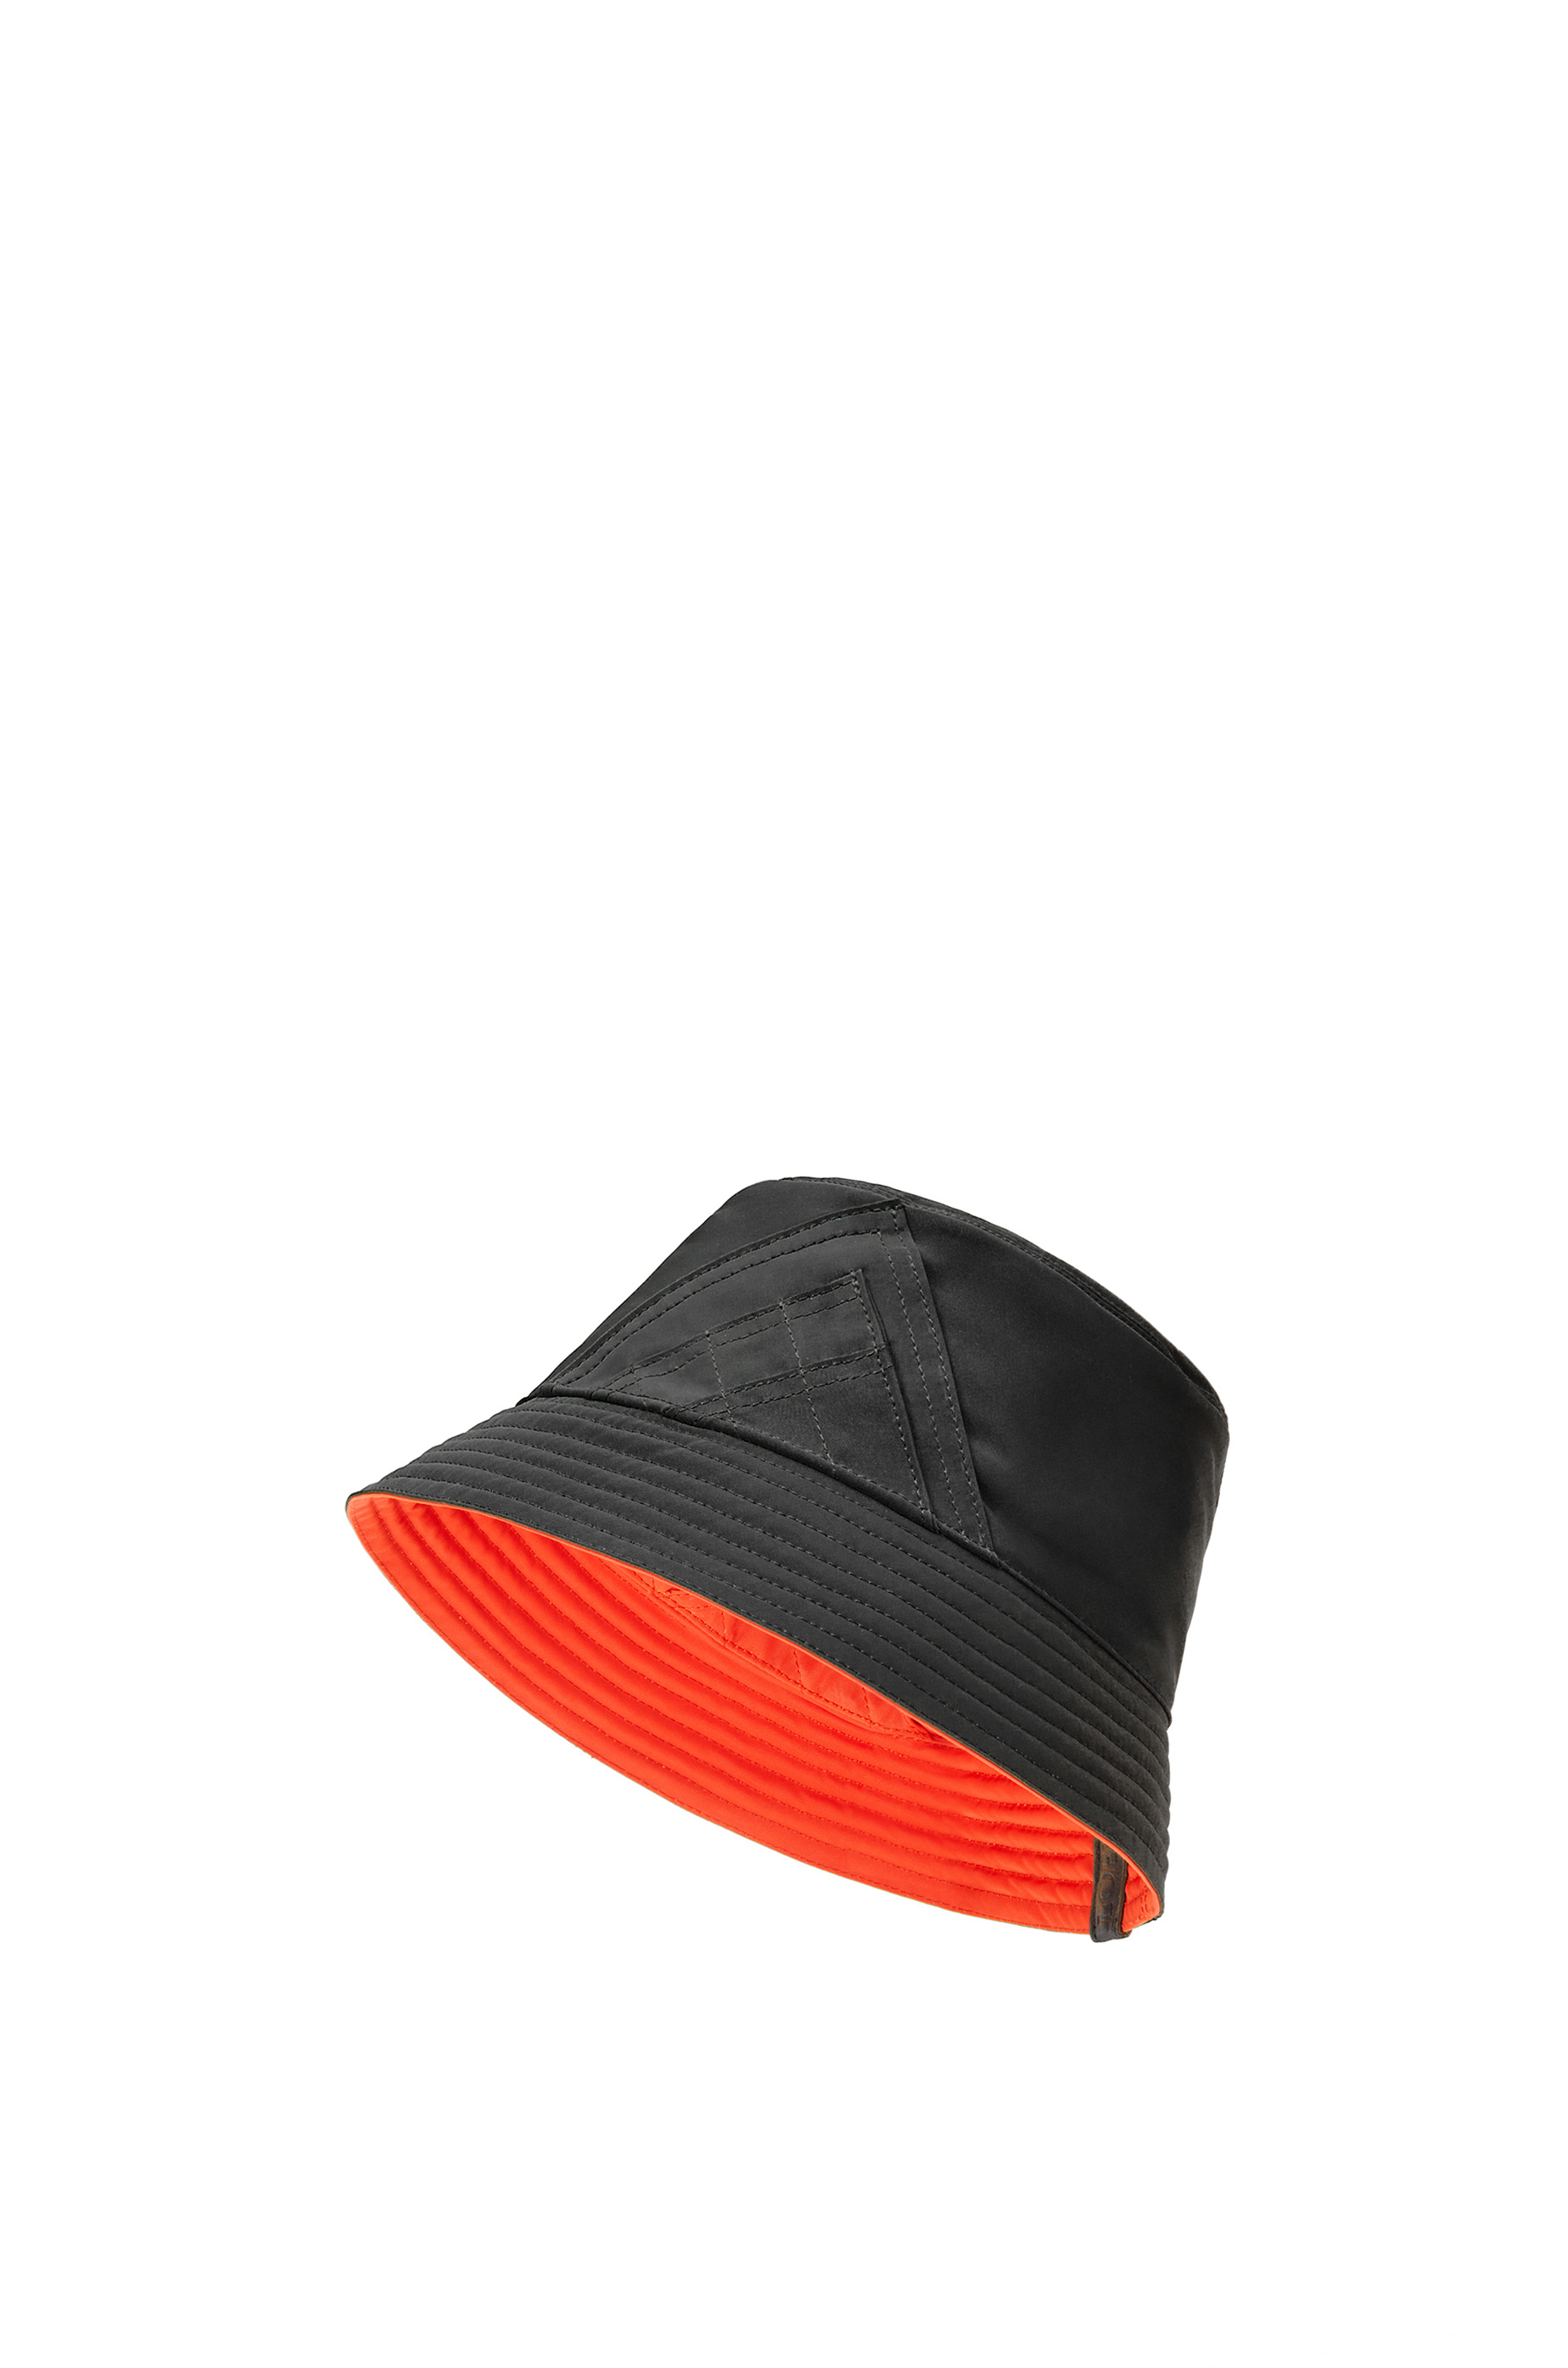 世界の LOEWE ロエベ アナグラムバケットハット 57 現行販売品 帽子